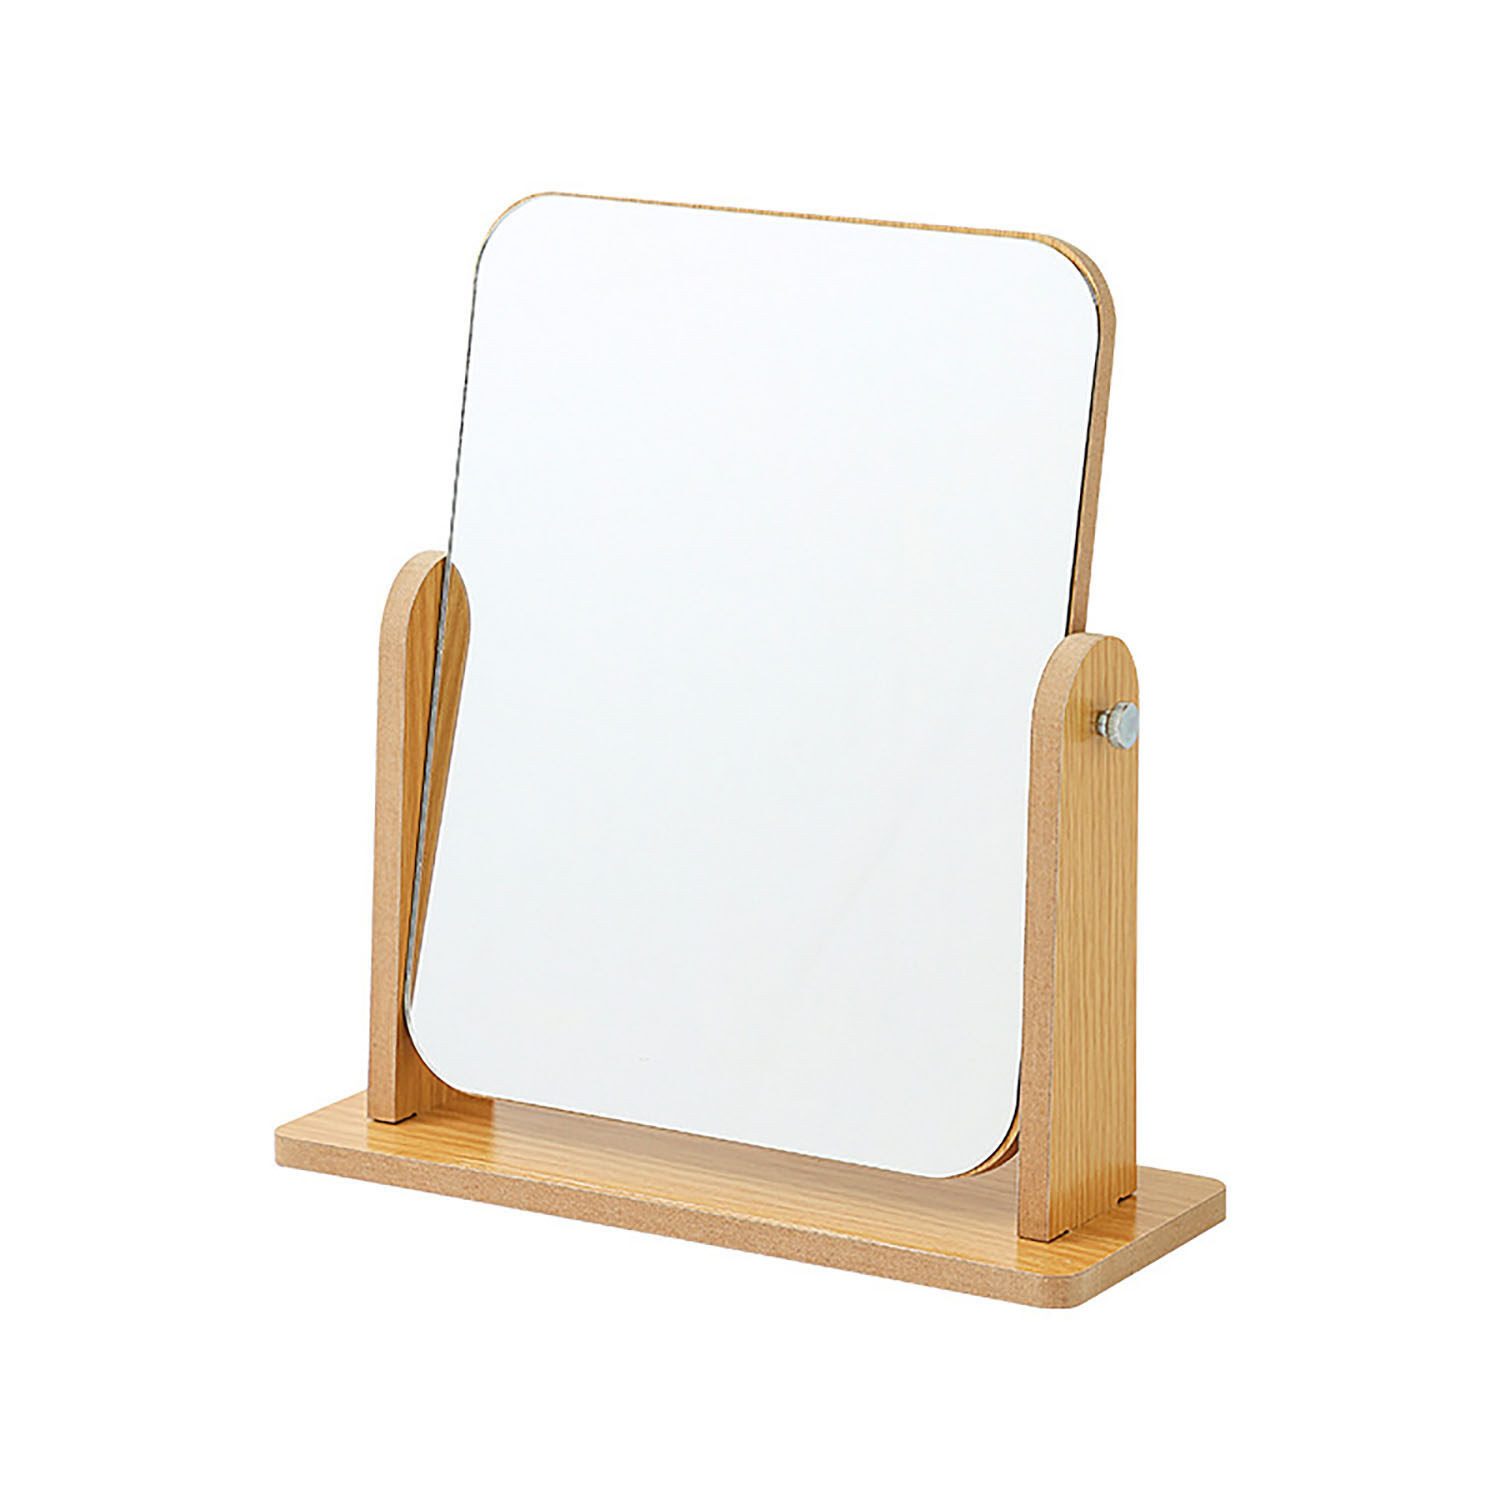 HAUSS SPLOE Kosmetikspiegel 360° drehbarer Holzspiegel klappbarer Kosmetikspiegel Tischspiegel (360 Grad Freistehend tischspiege, Abnehmbar Einfachen), für Schminktisch Schreibtisch Badezimmer Schlafzimmer